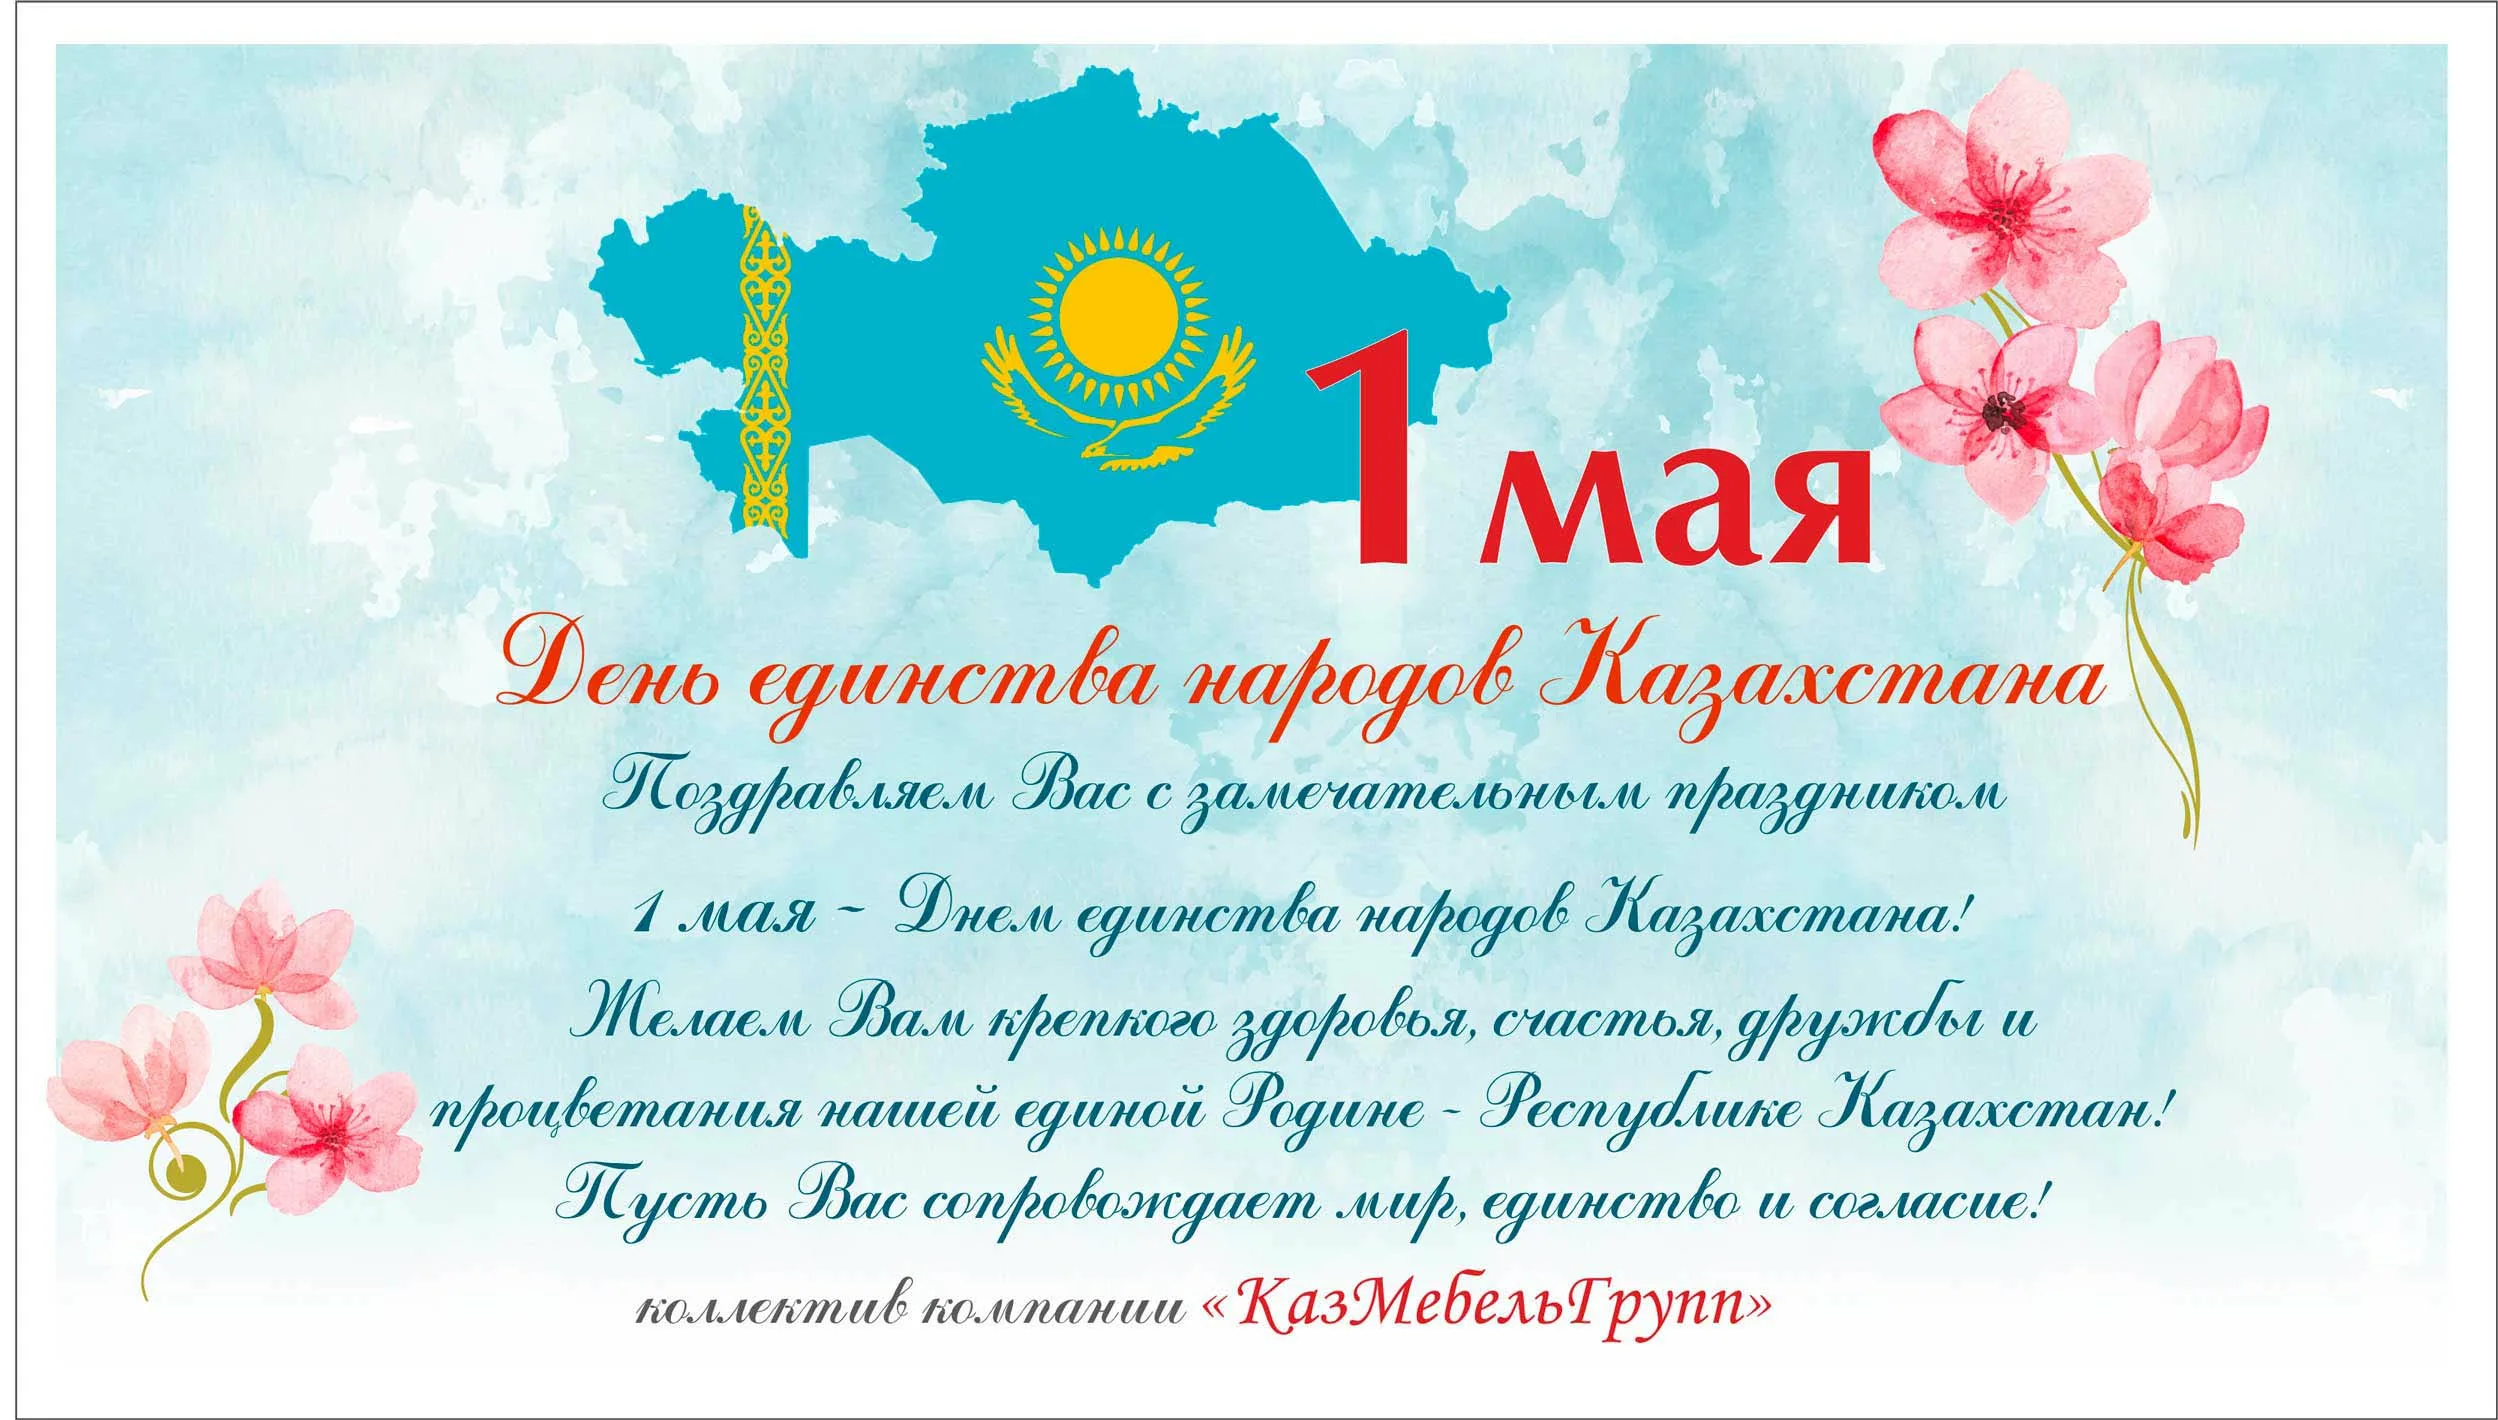 Март на казахском языке перевод